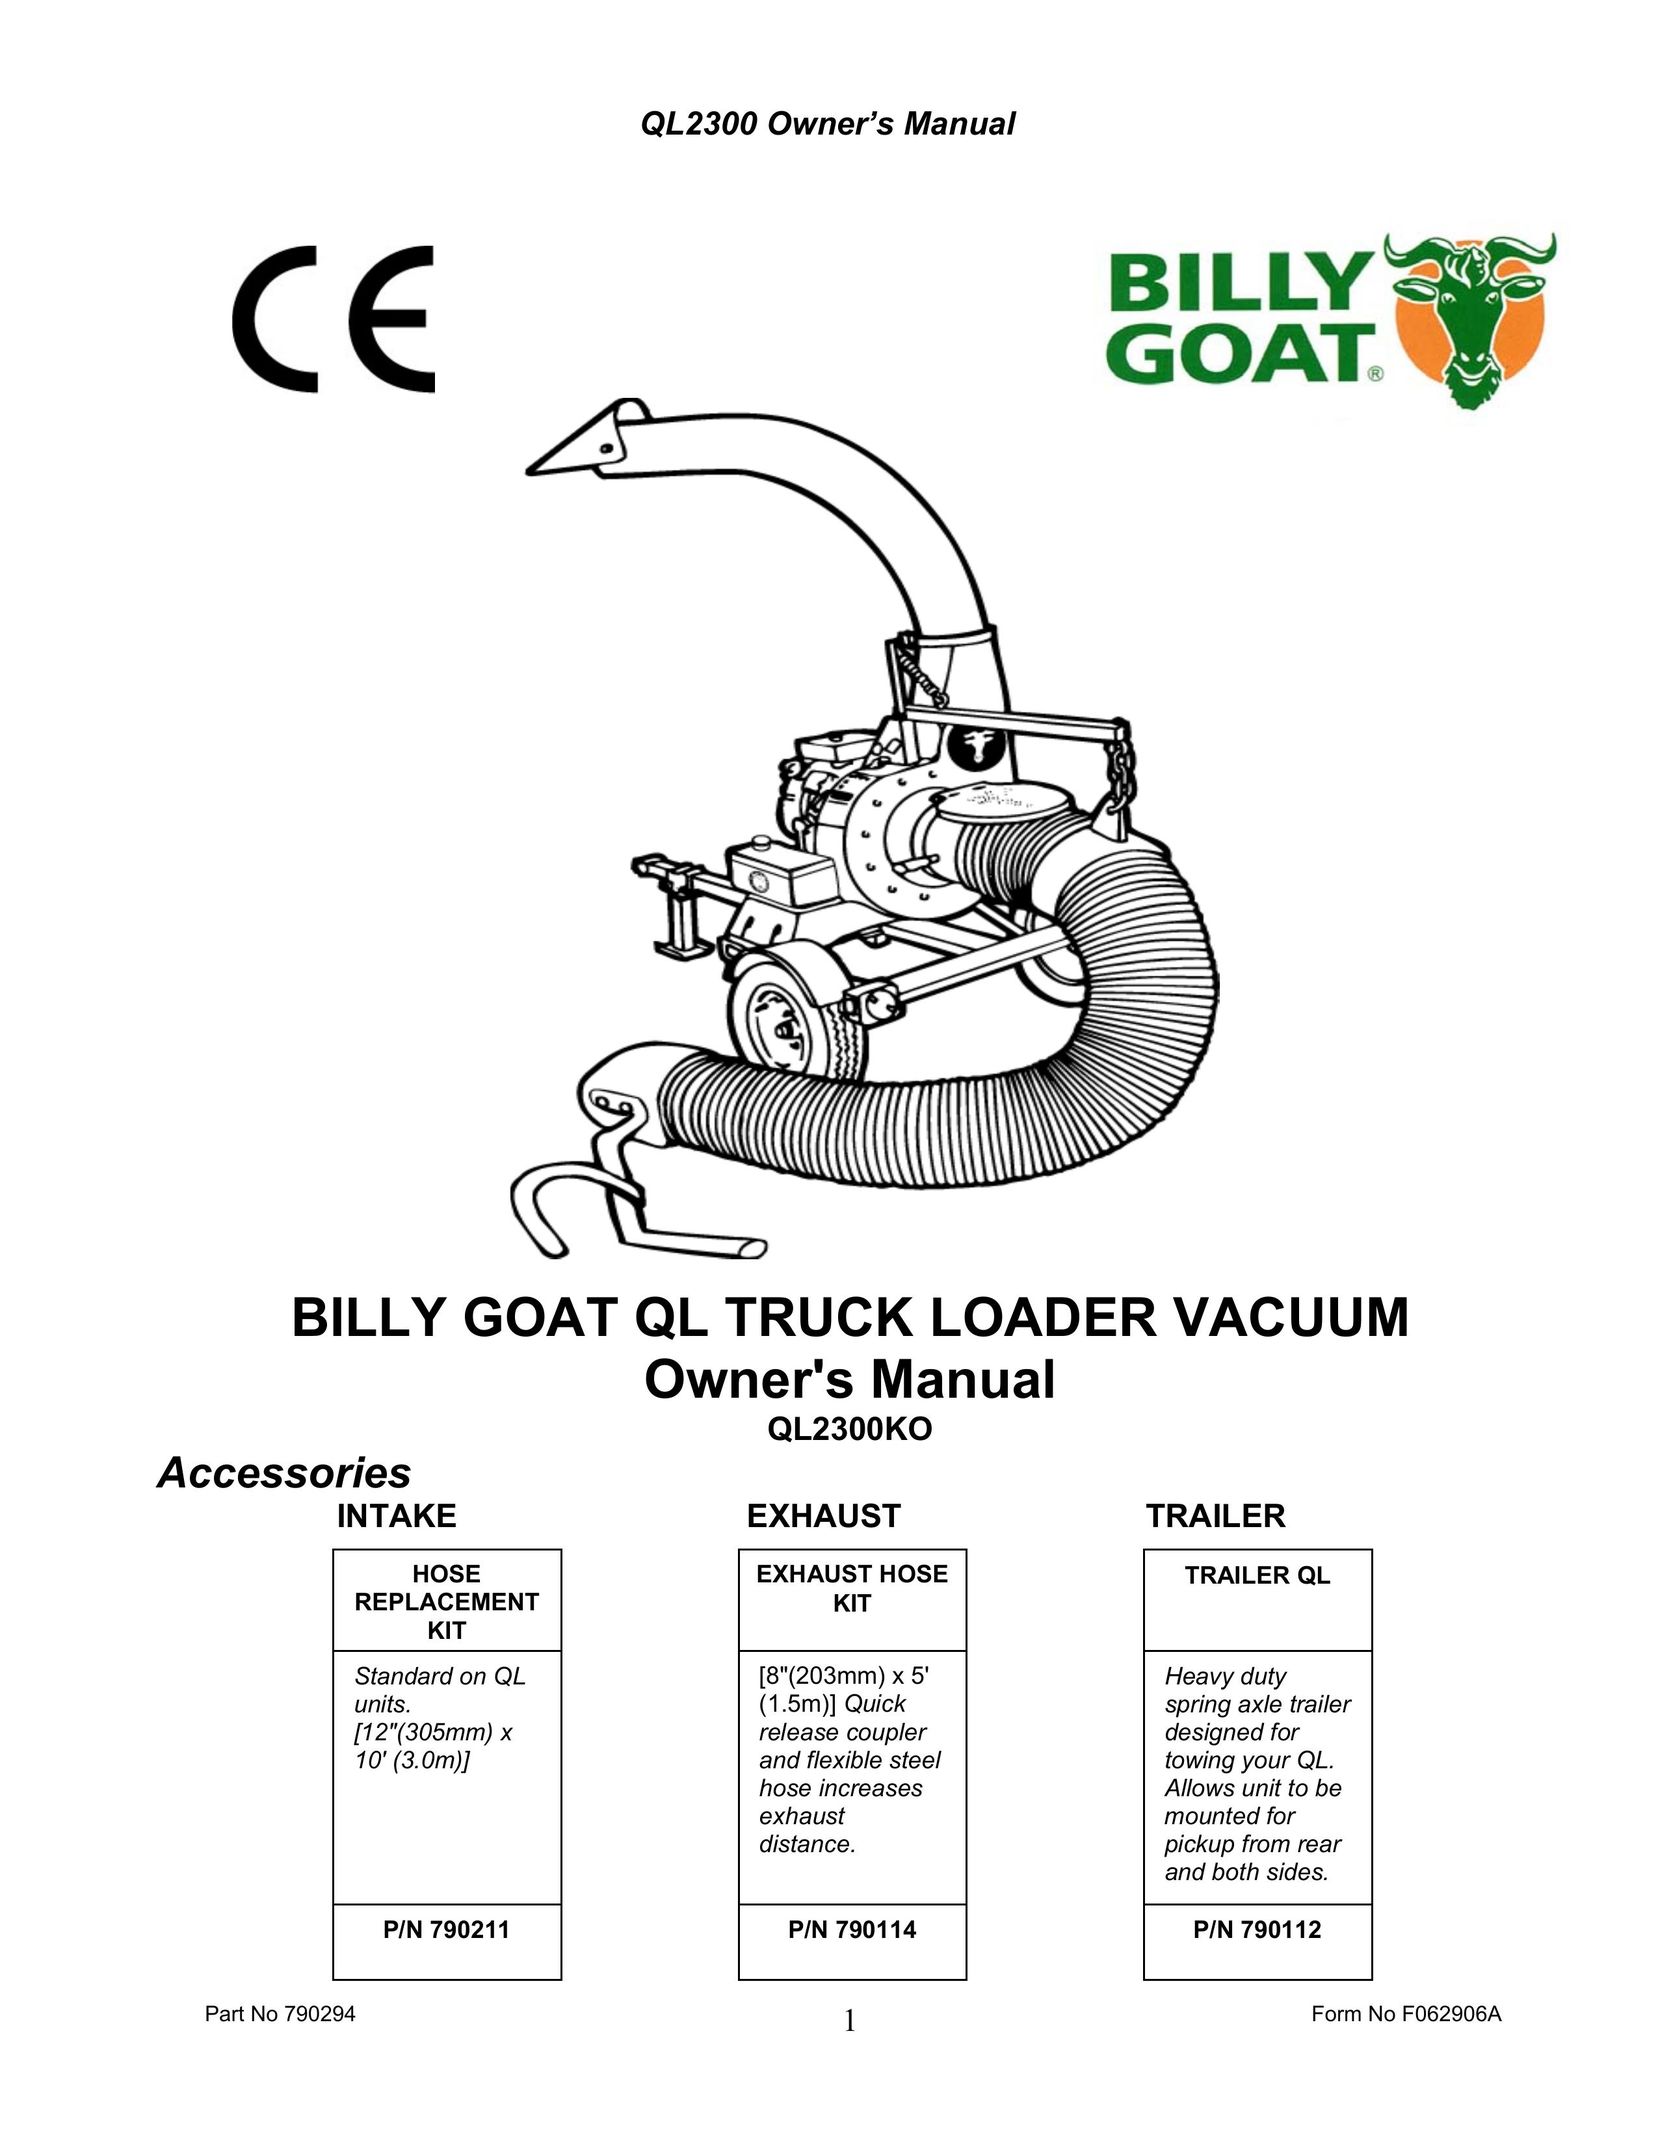 Billy Goat QL2300KO Vacuum Cleaner User Manual